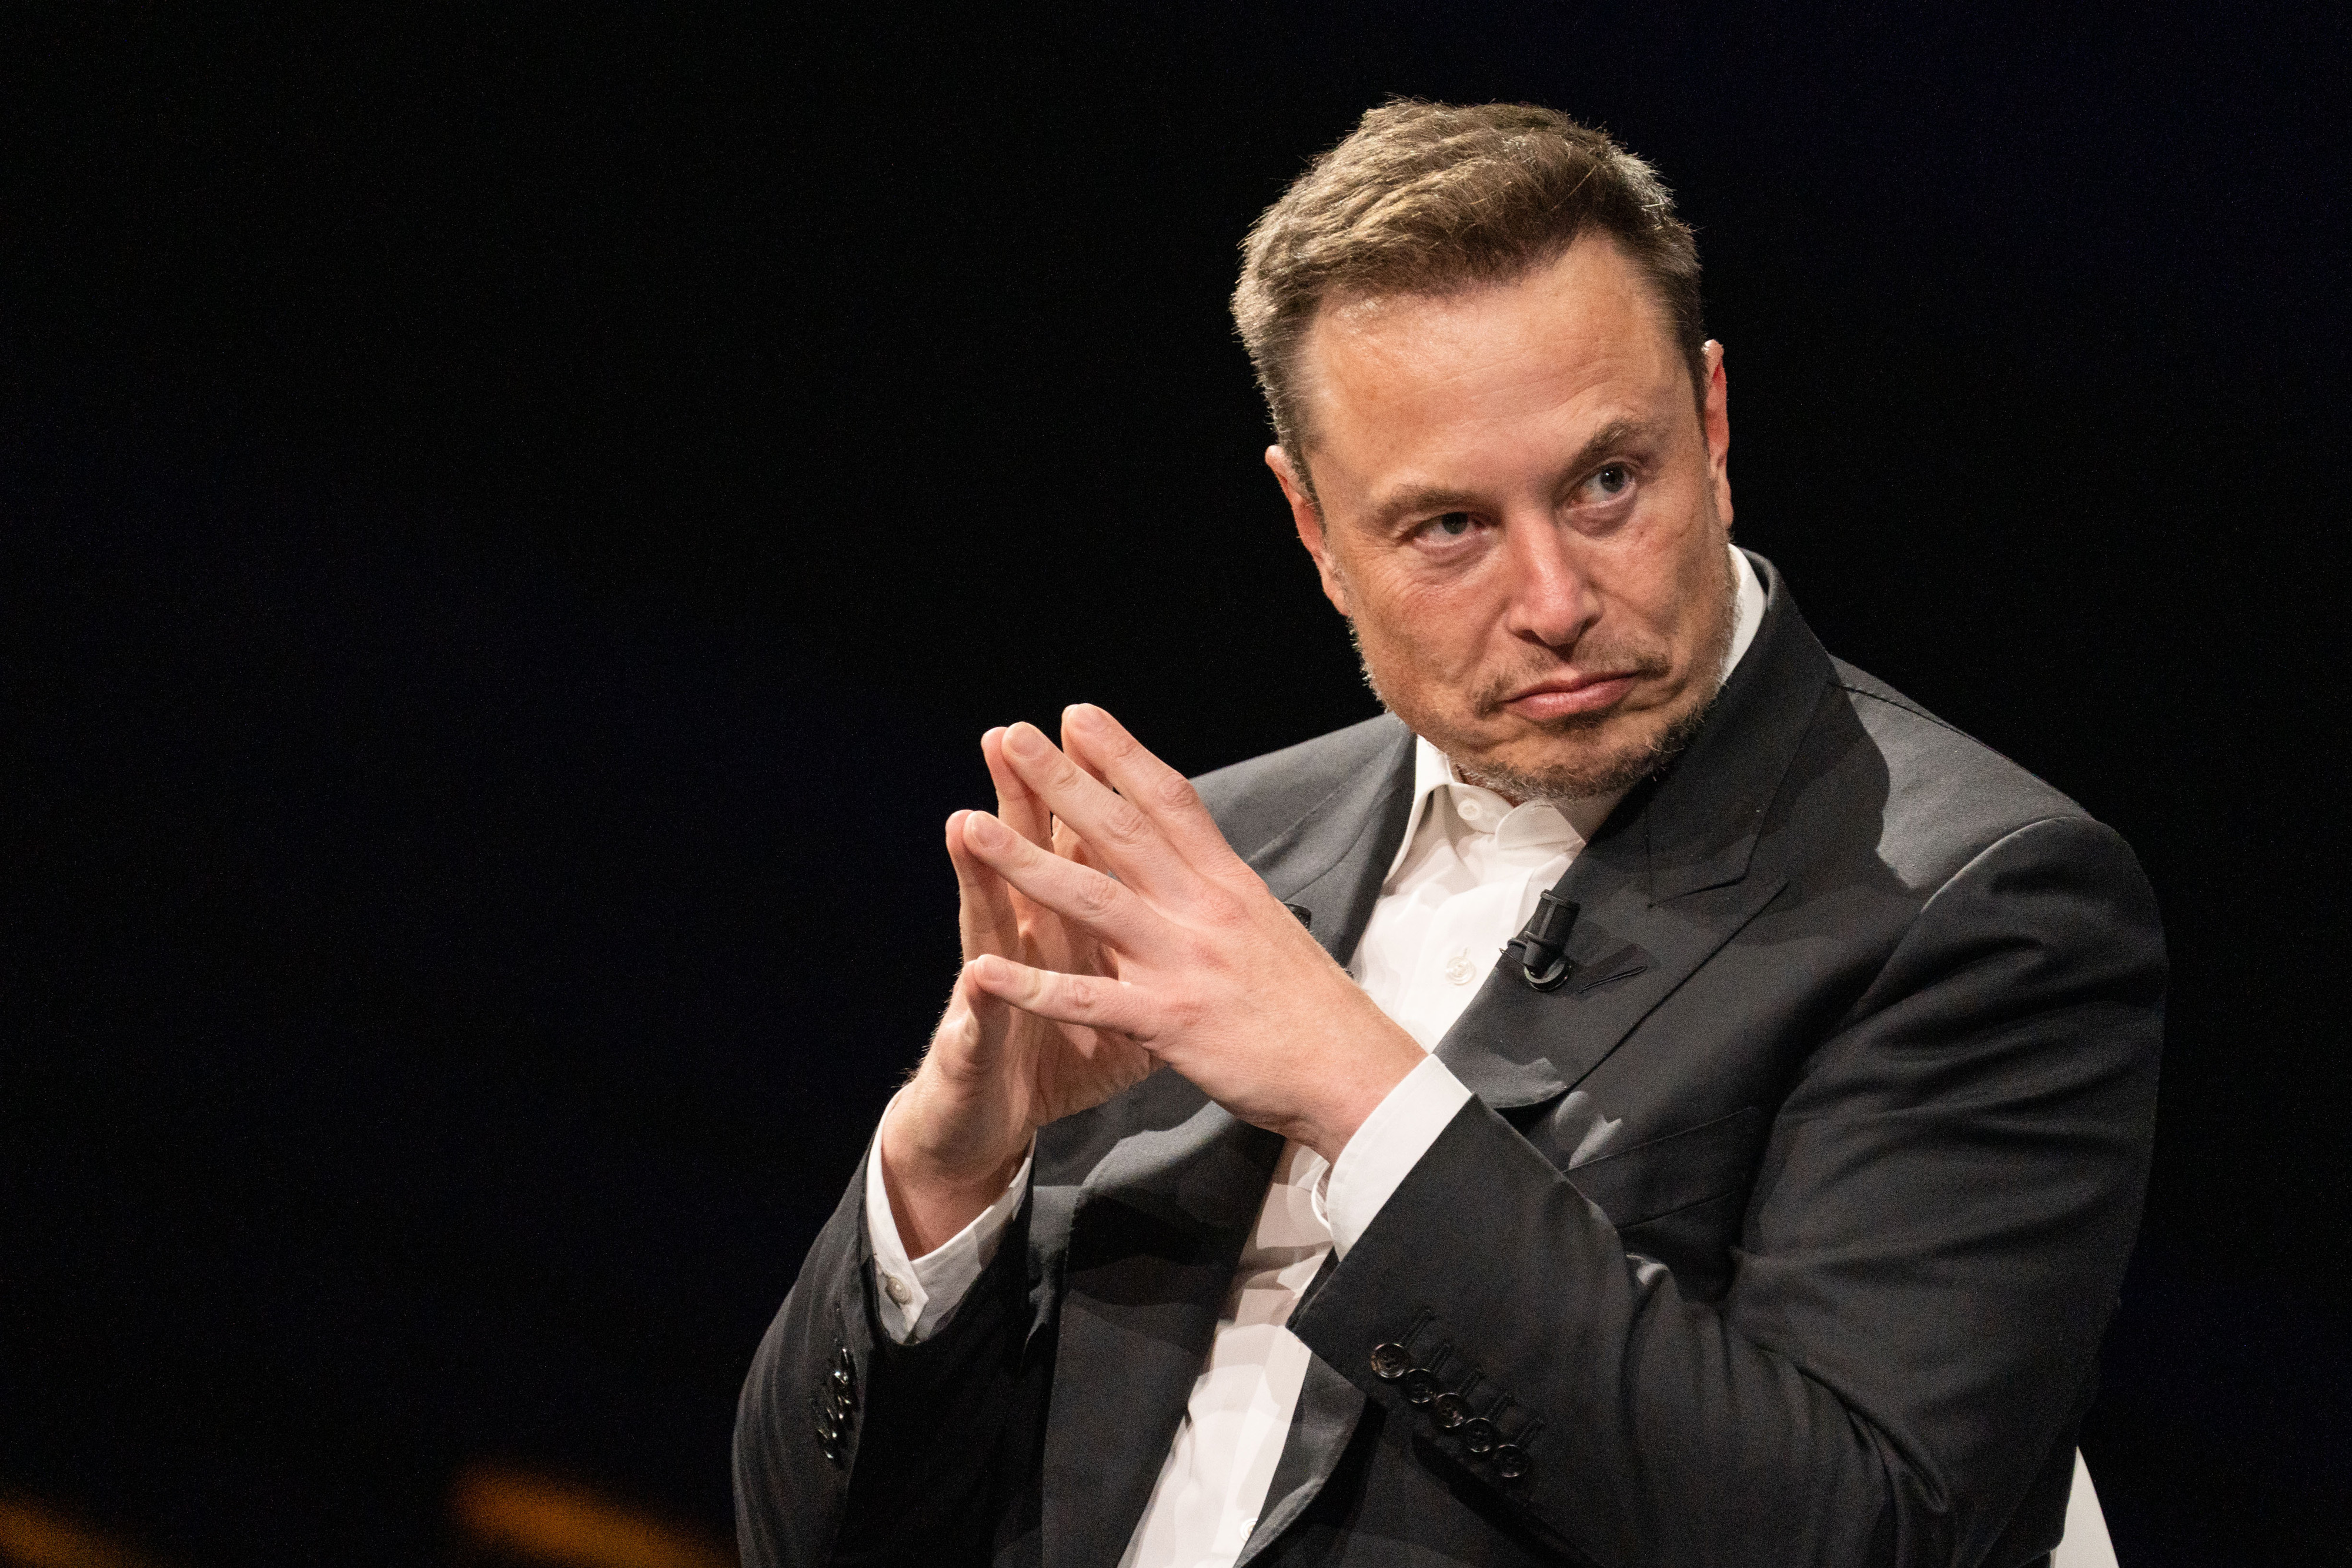 Das Konterfei von Elon Musk erfreut sich auch bei Betrügern großer Beliebtheit